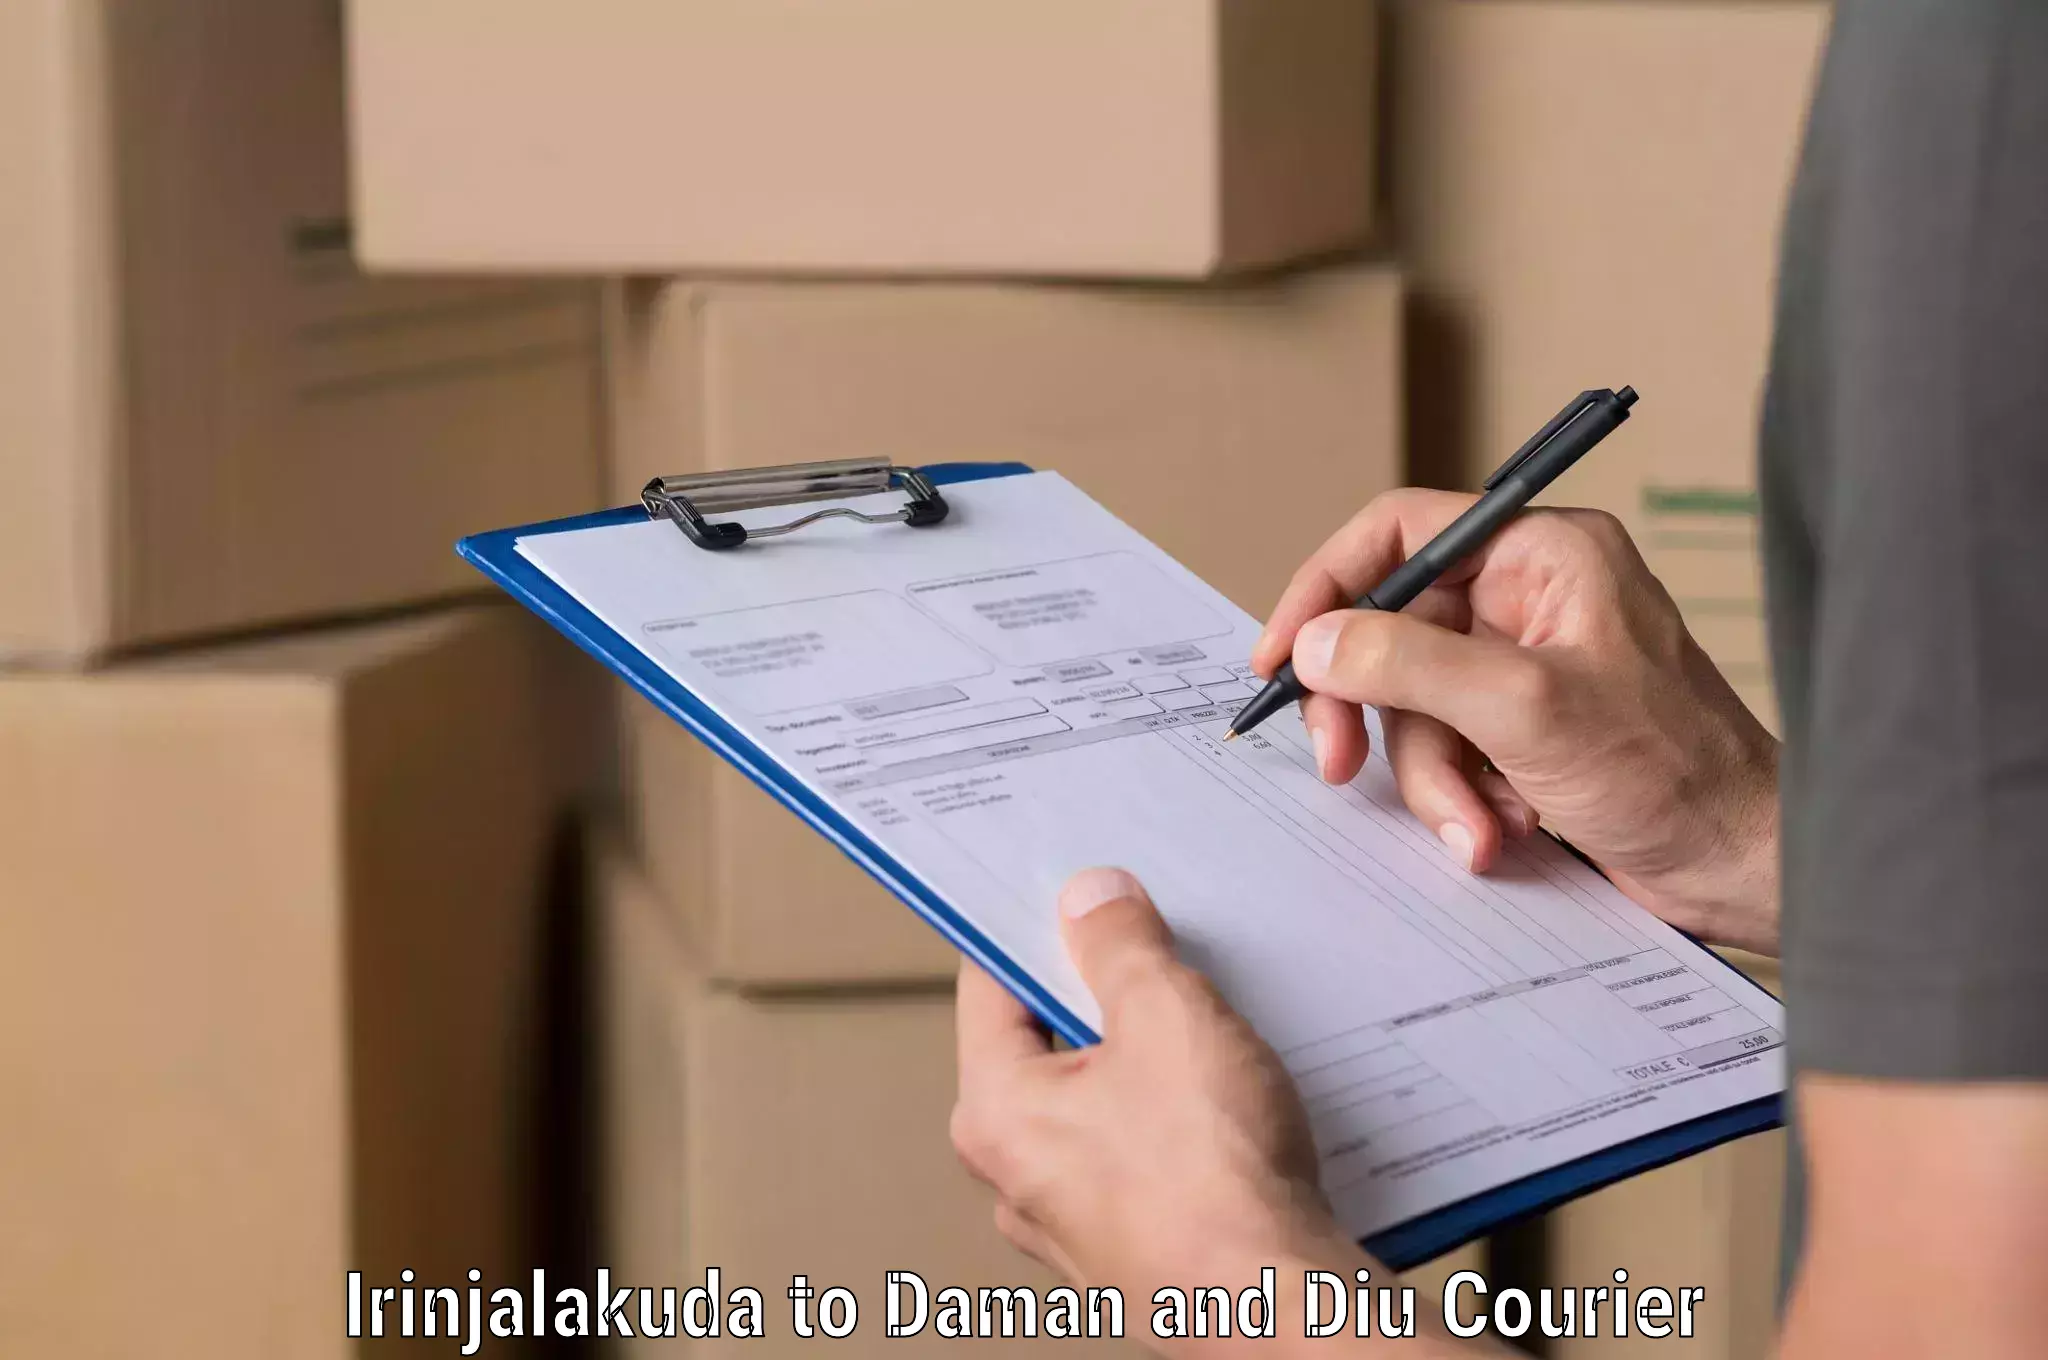 Secure packaging in Irinjalakuda to Diu